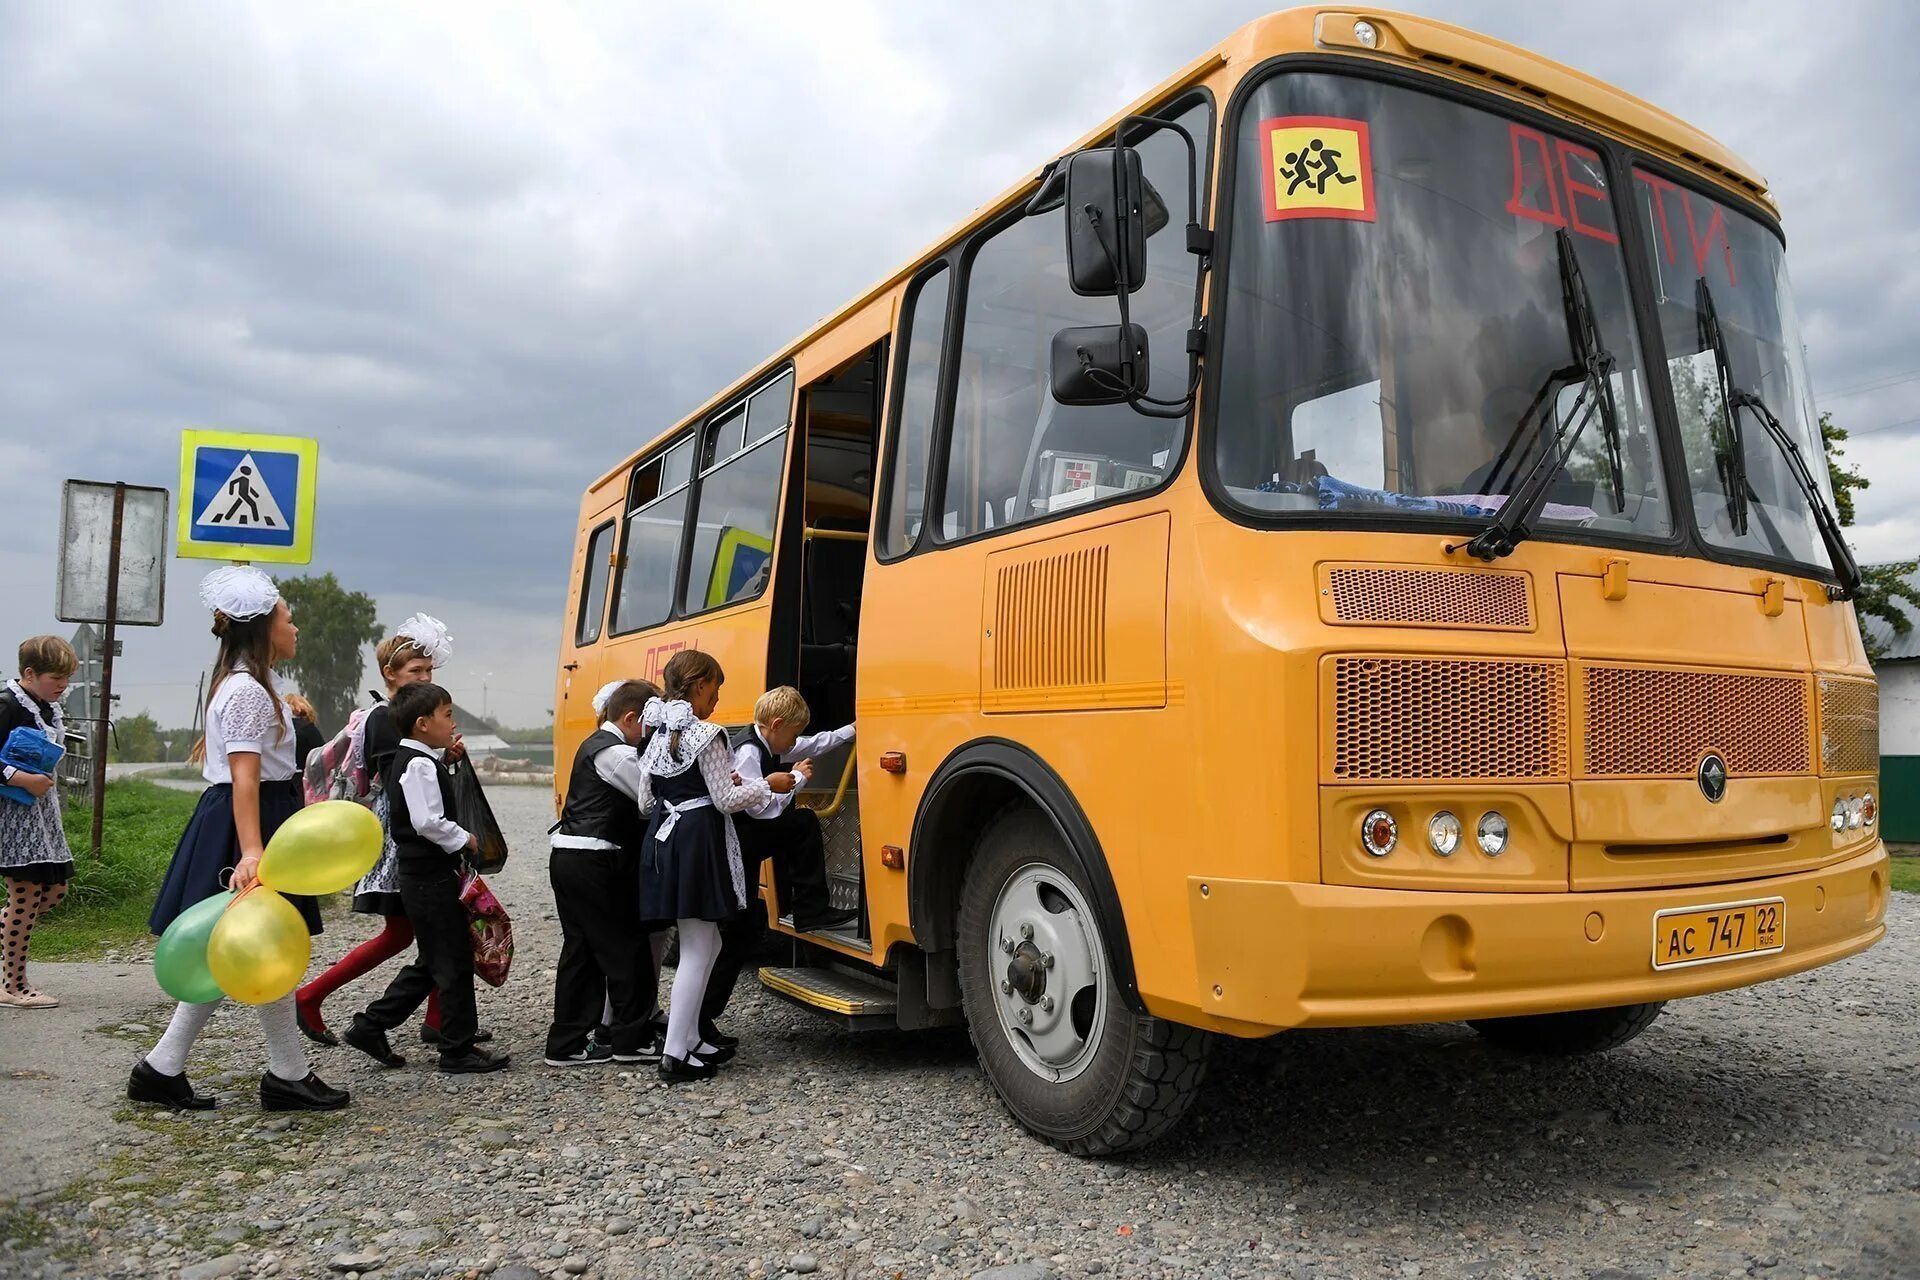 Школьный автобус право